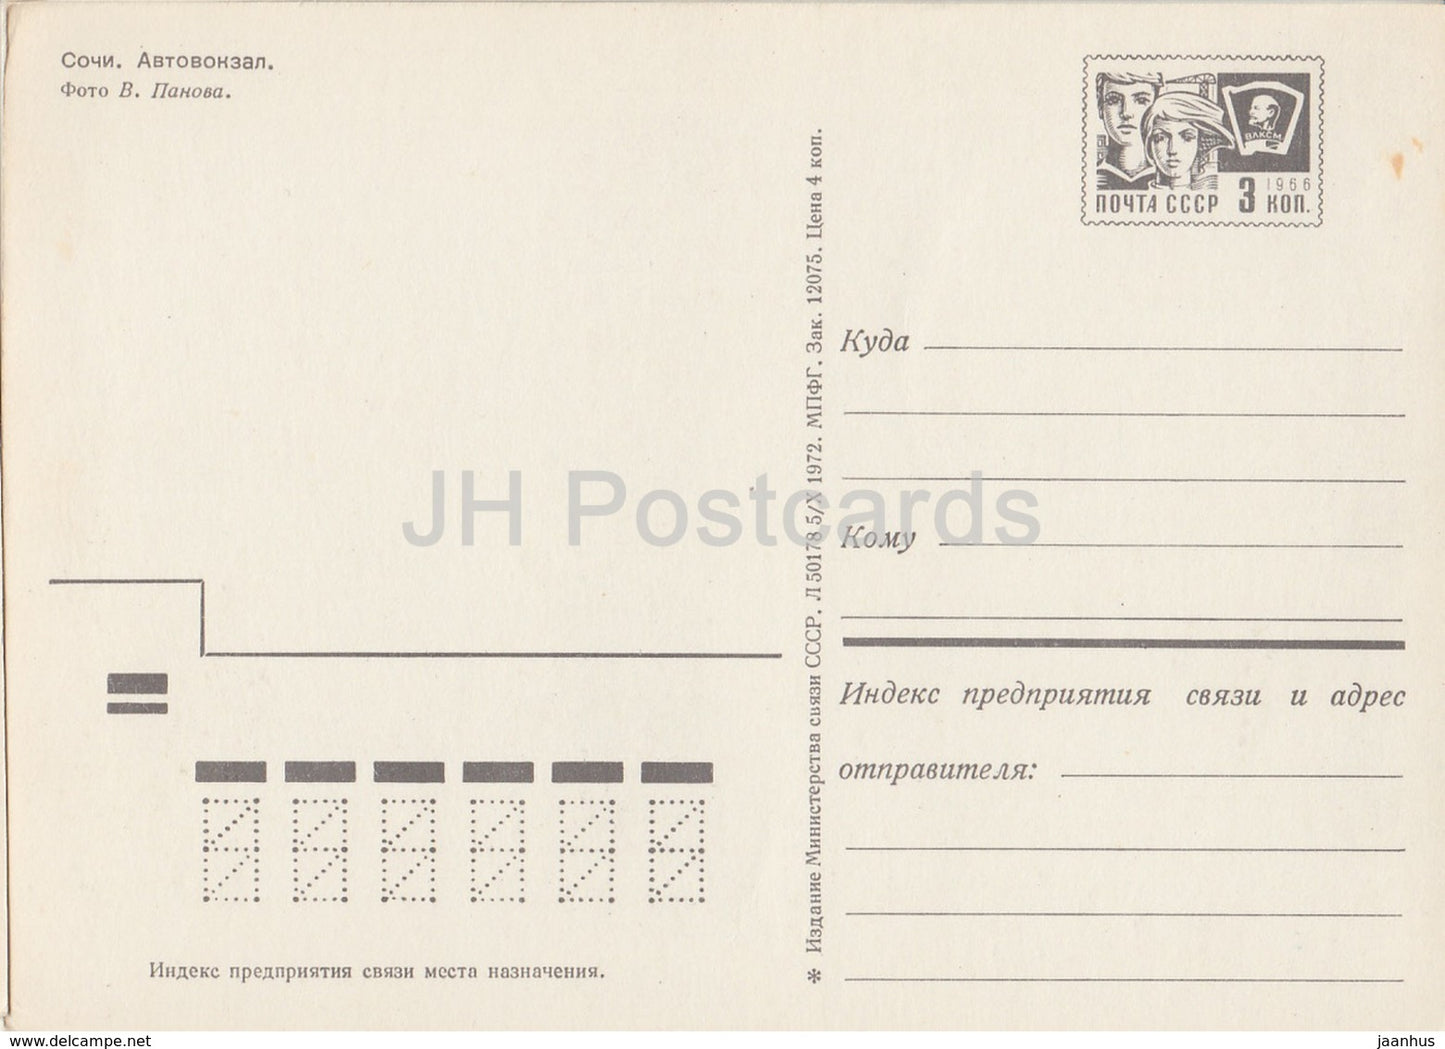 Sotchi - Gare routière - Ikarus - entier postal - 1972 - Russie URSS - inutilisé